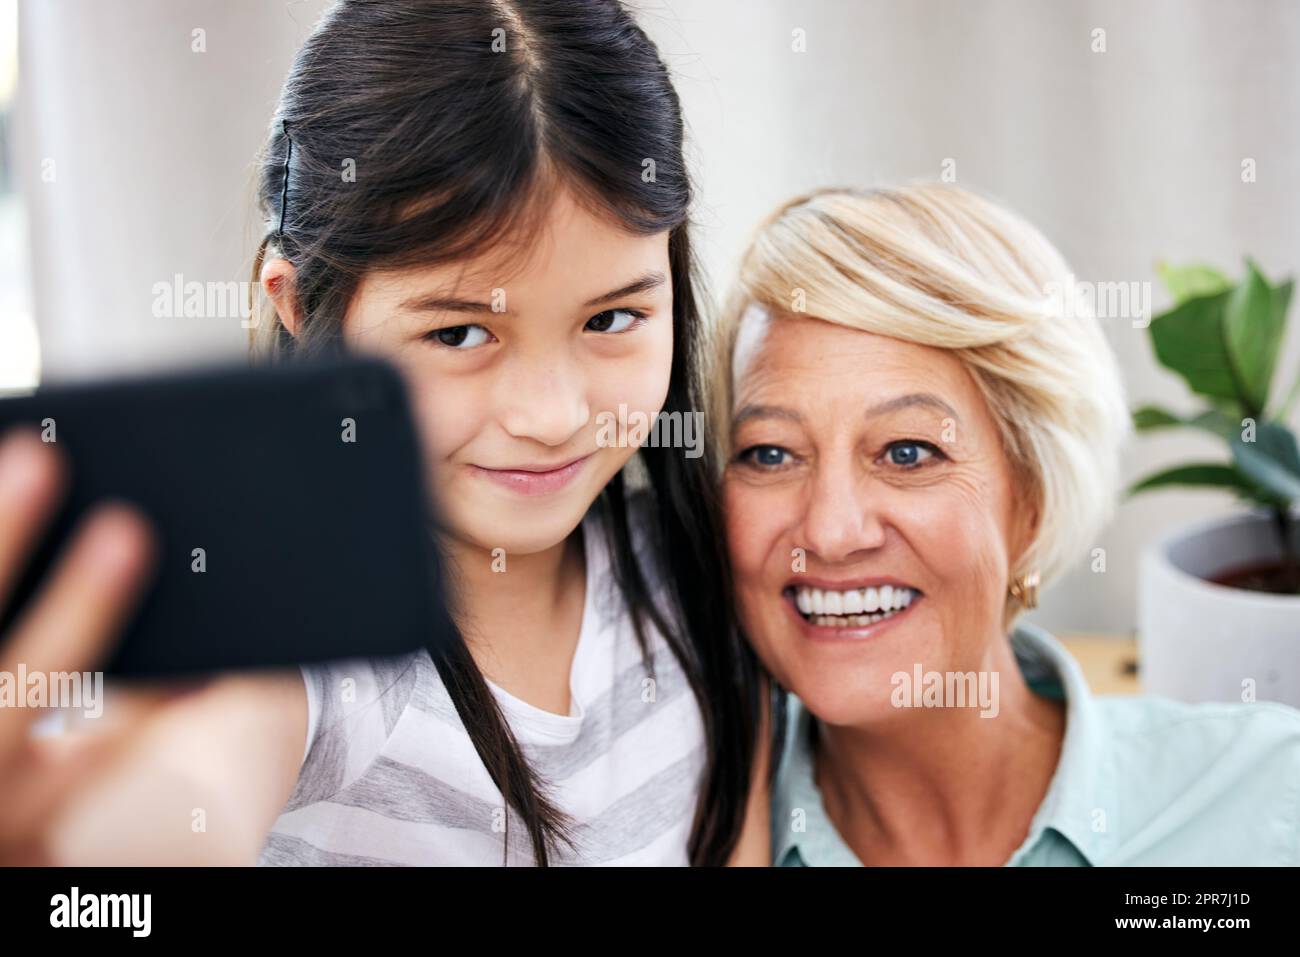 Mein Handy ist voller Bilder wie diese. Ein kleines Mädchen, das zu Hause mit ihrer Großmutter ein Selfie macht. Stockfoto